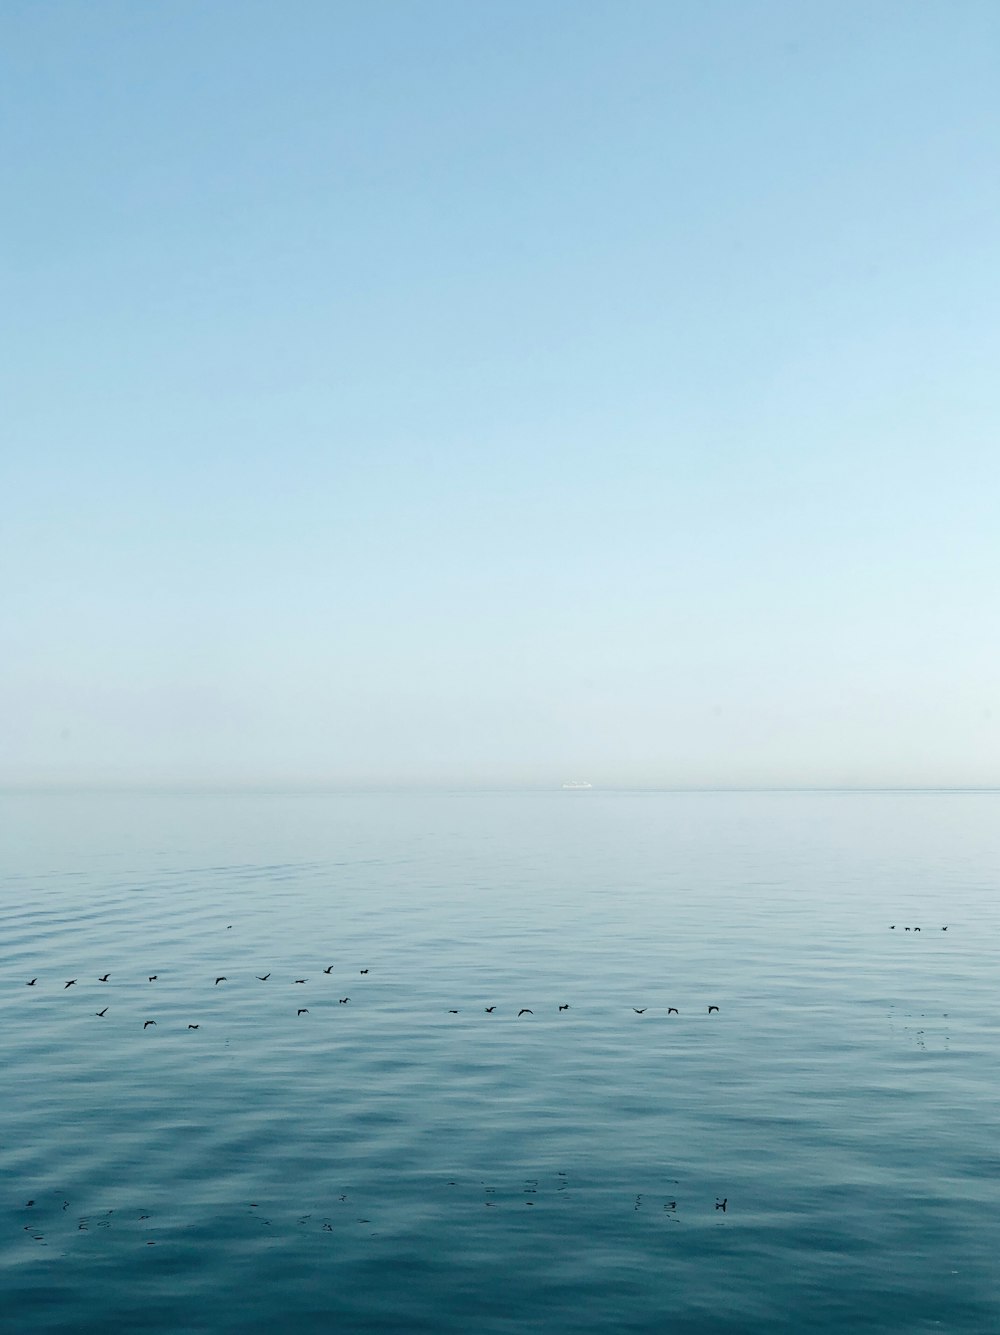 pájaros volando sobre el océano en calma